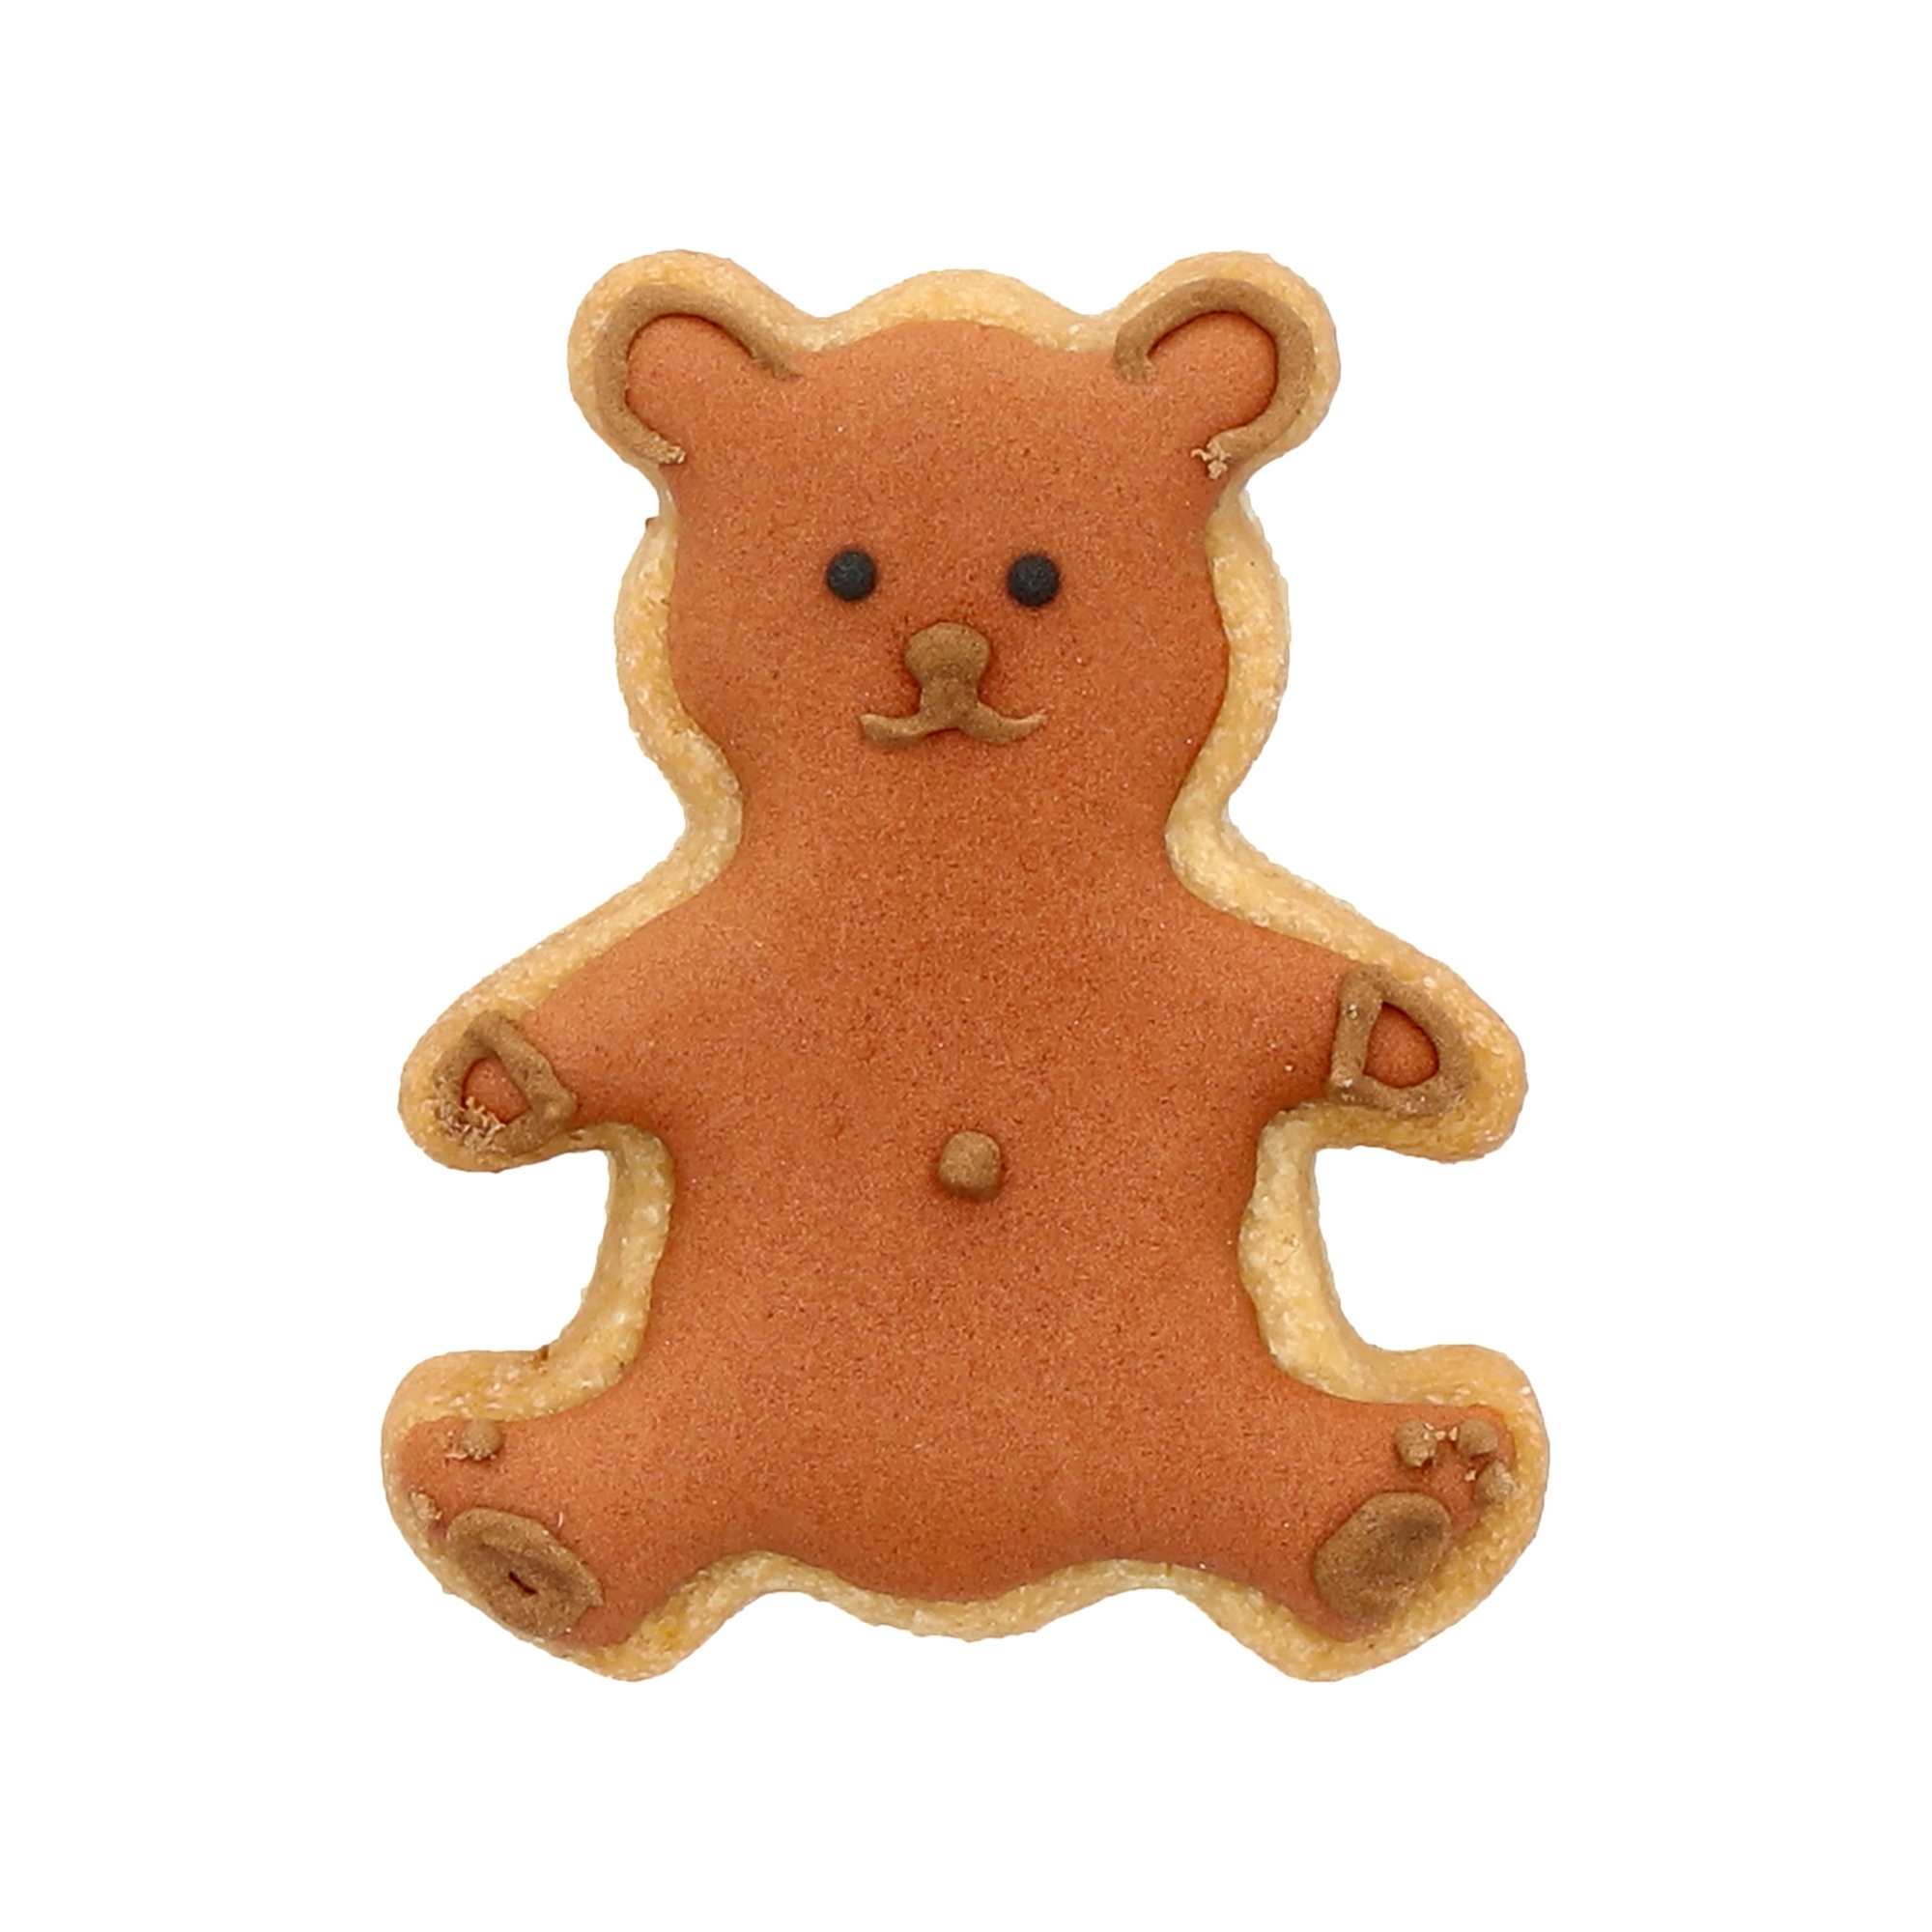 Birkmann - cookie cutter - Teddy bear small 5 cm